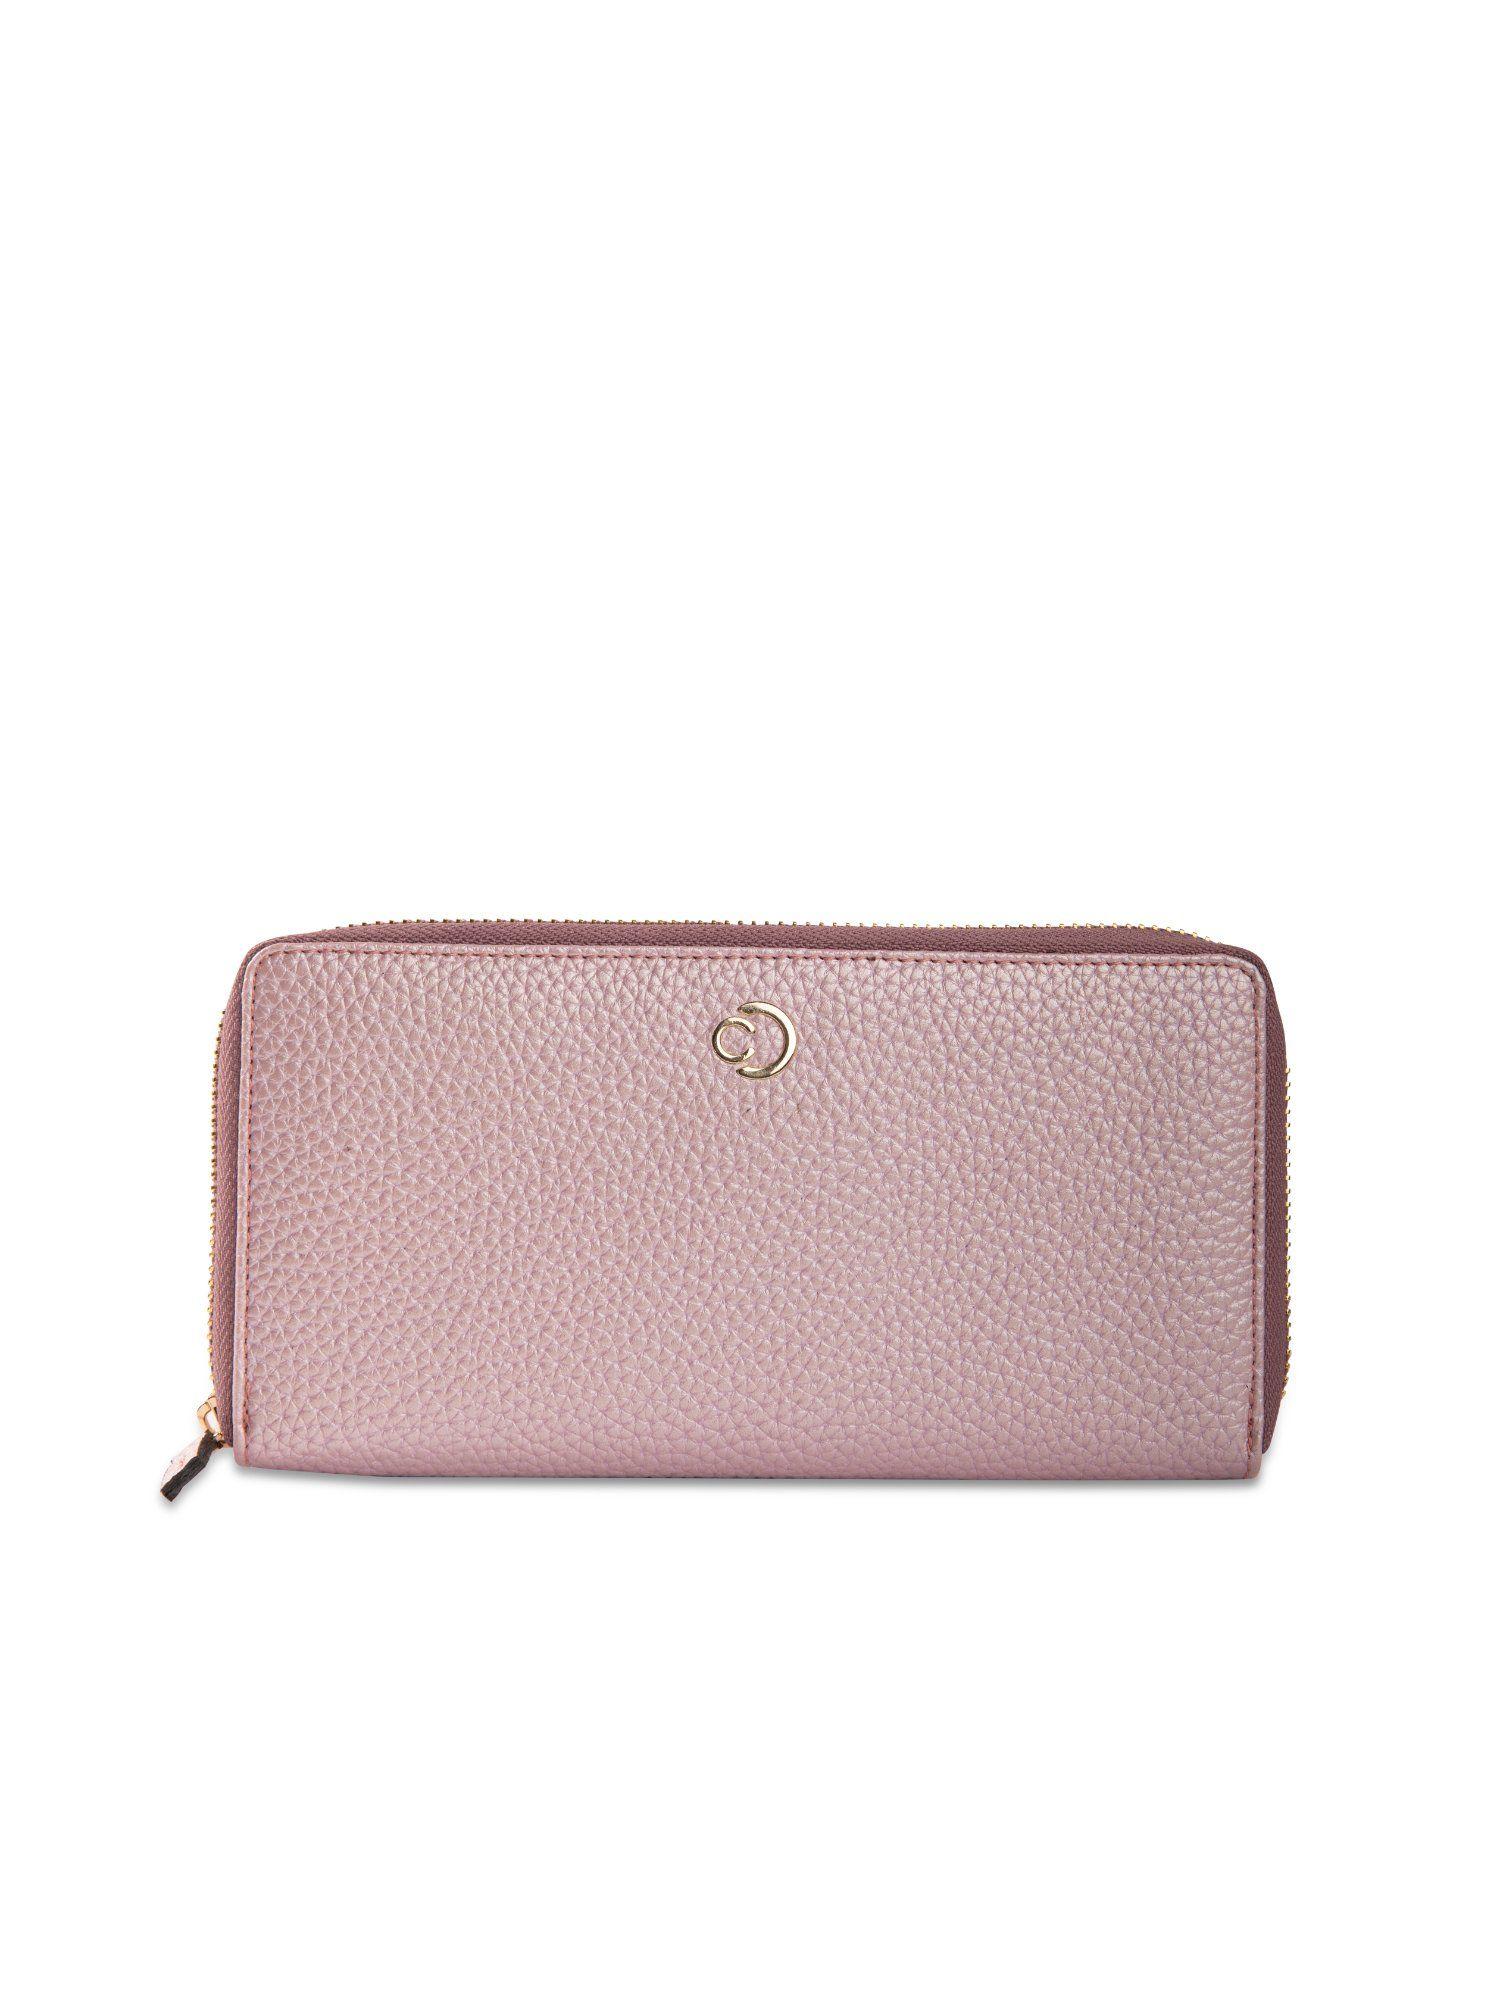 amelia large zip around blush wallet